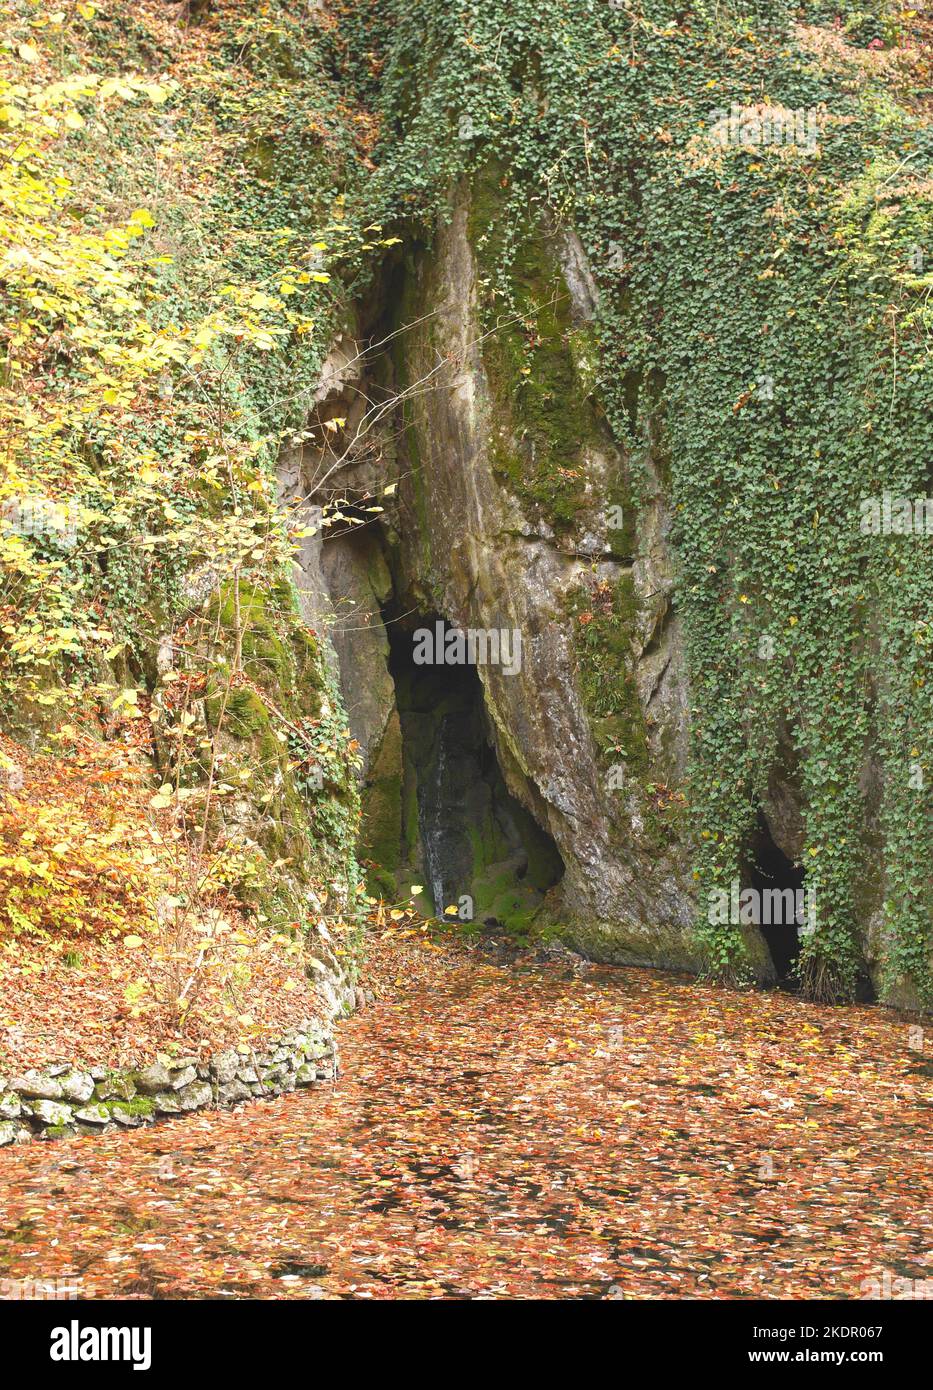 Grotte et chute d'eau, vallée de Szalajka, parc national de Bukk, collines de Bukk, Hongrie Banque D'Images